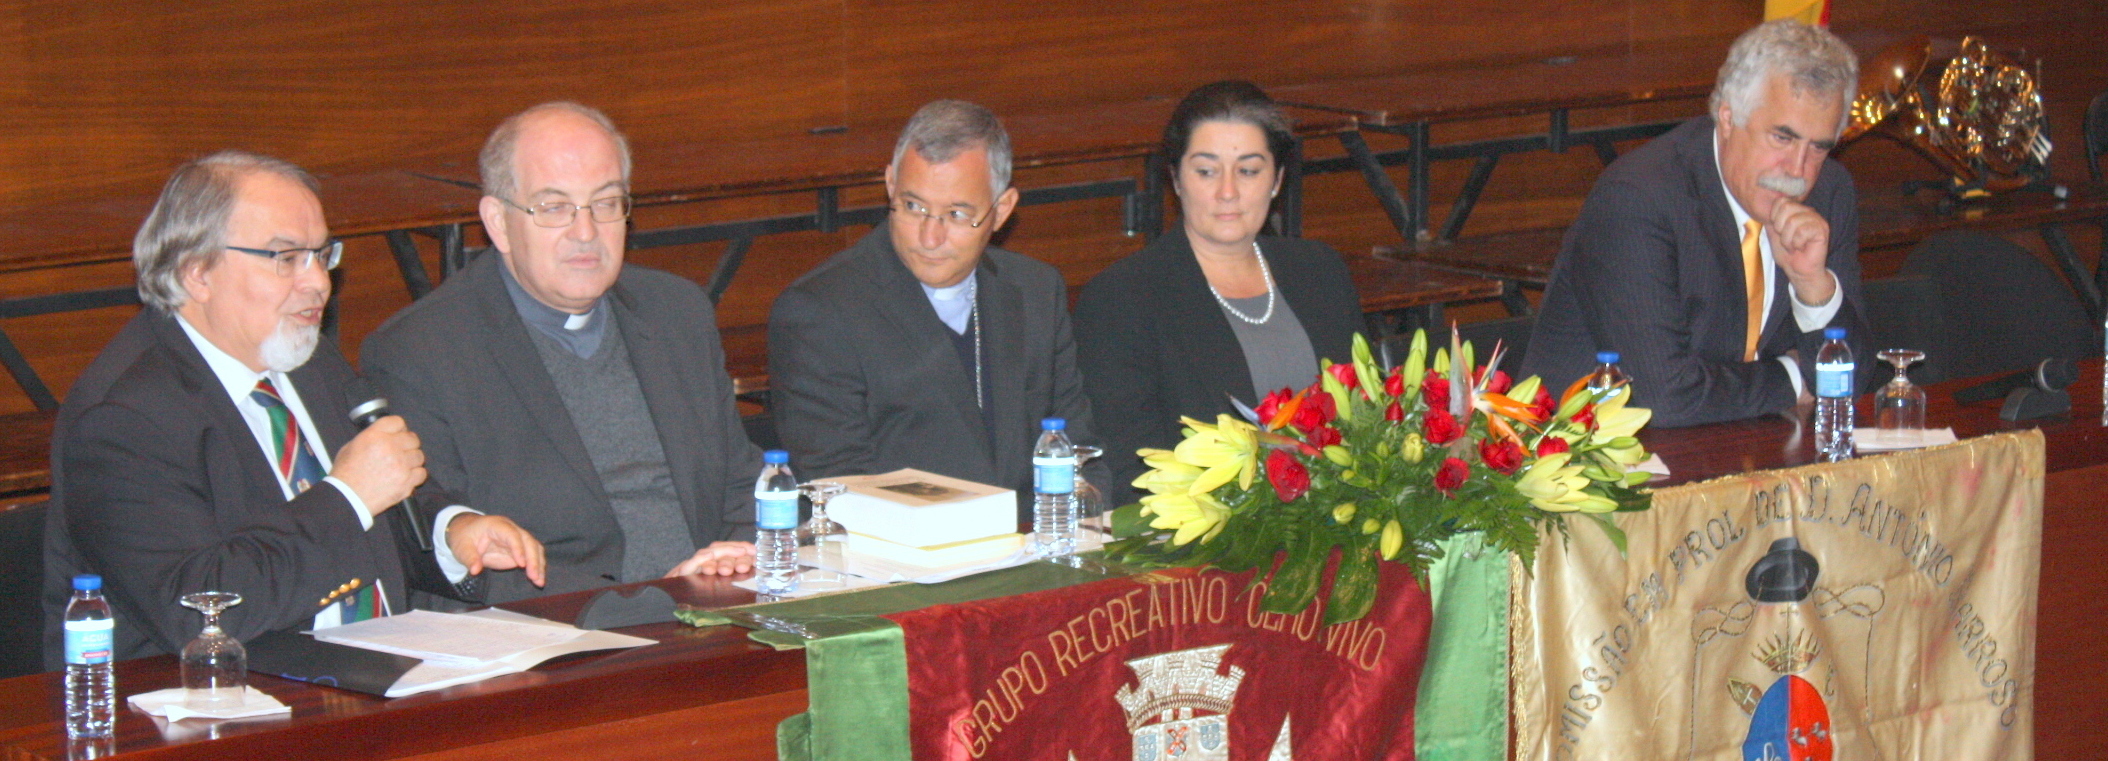 Sessão comemorativa do 159.º aniversário do nascimento de D. António Barroso